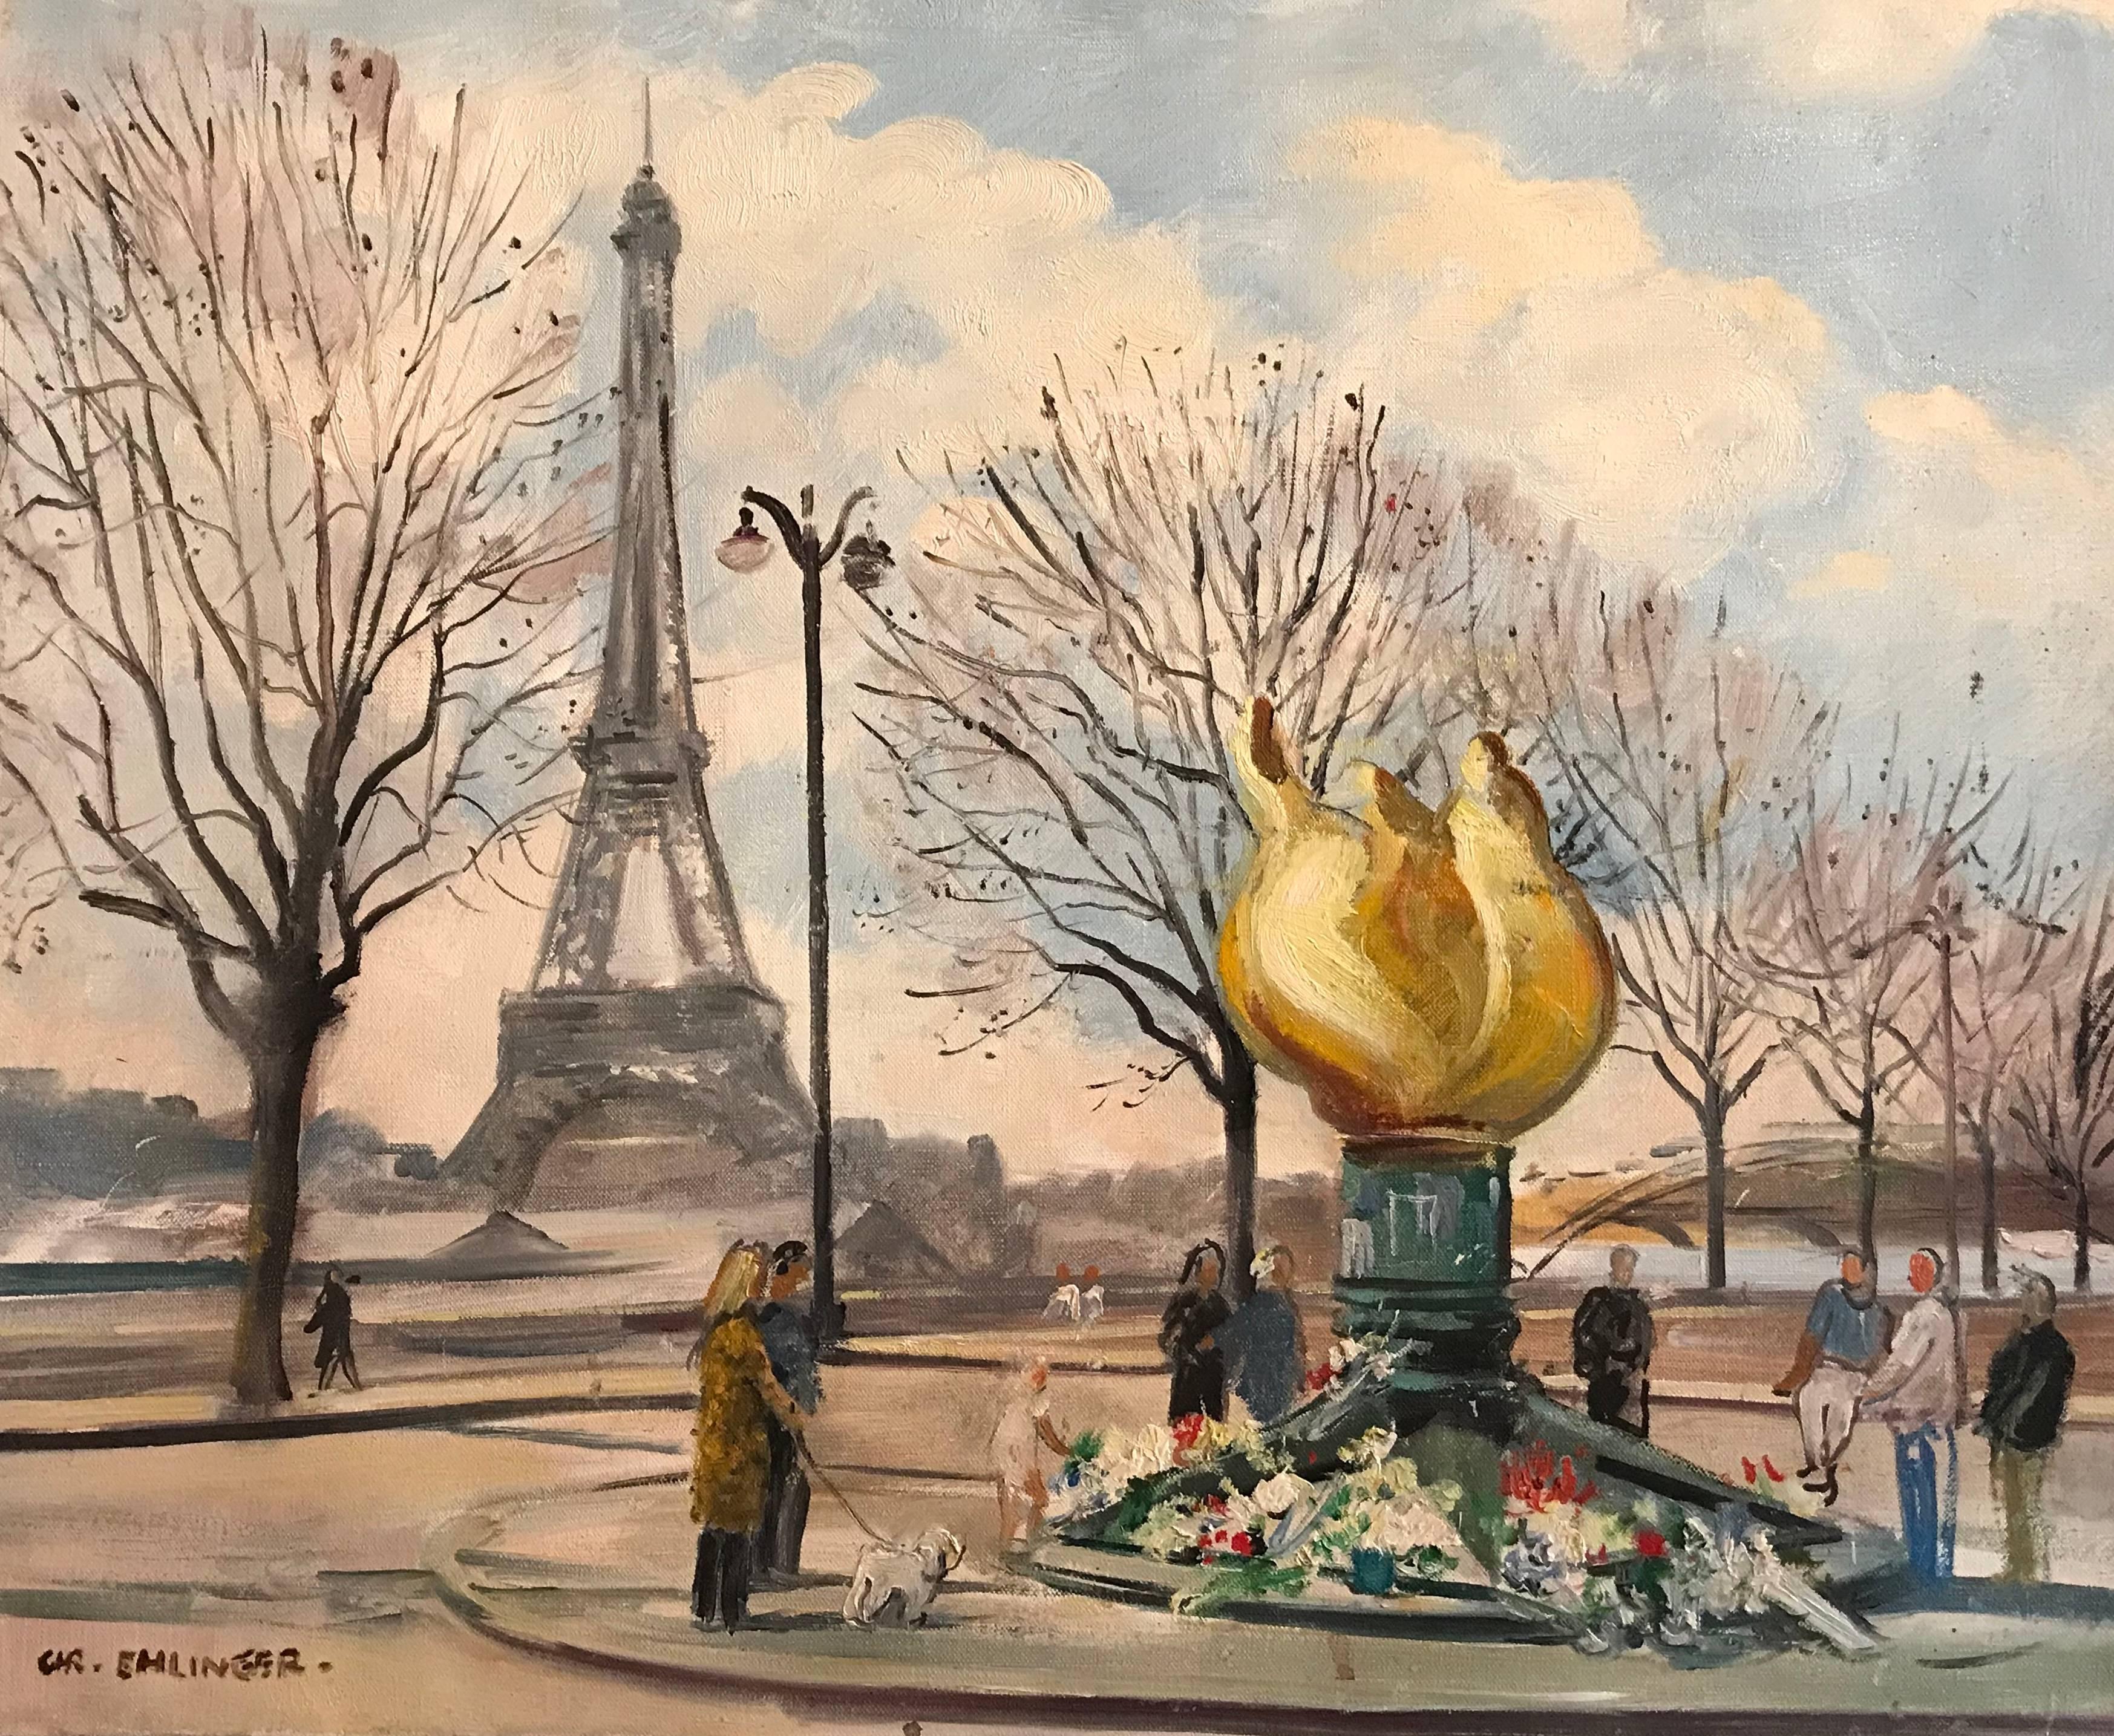 Landscape Painting Christian Ehlinger - Flame of Liberty, Paris - Mémorial de la princesse Diana, peinture à l'huile signée